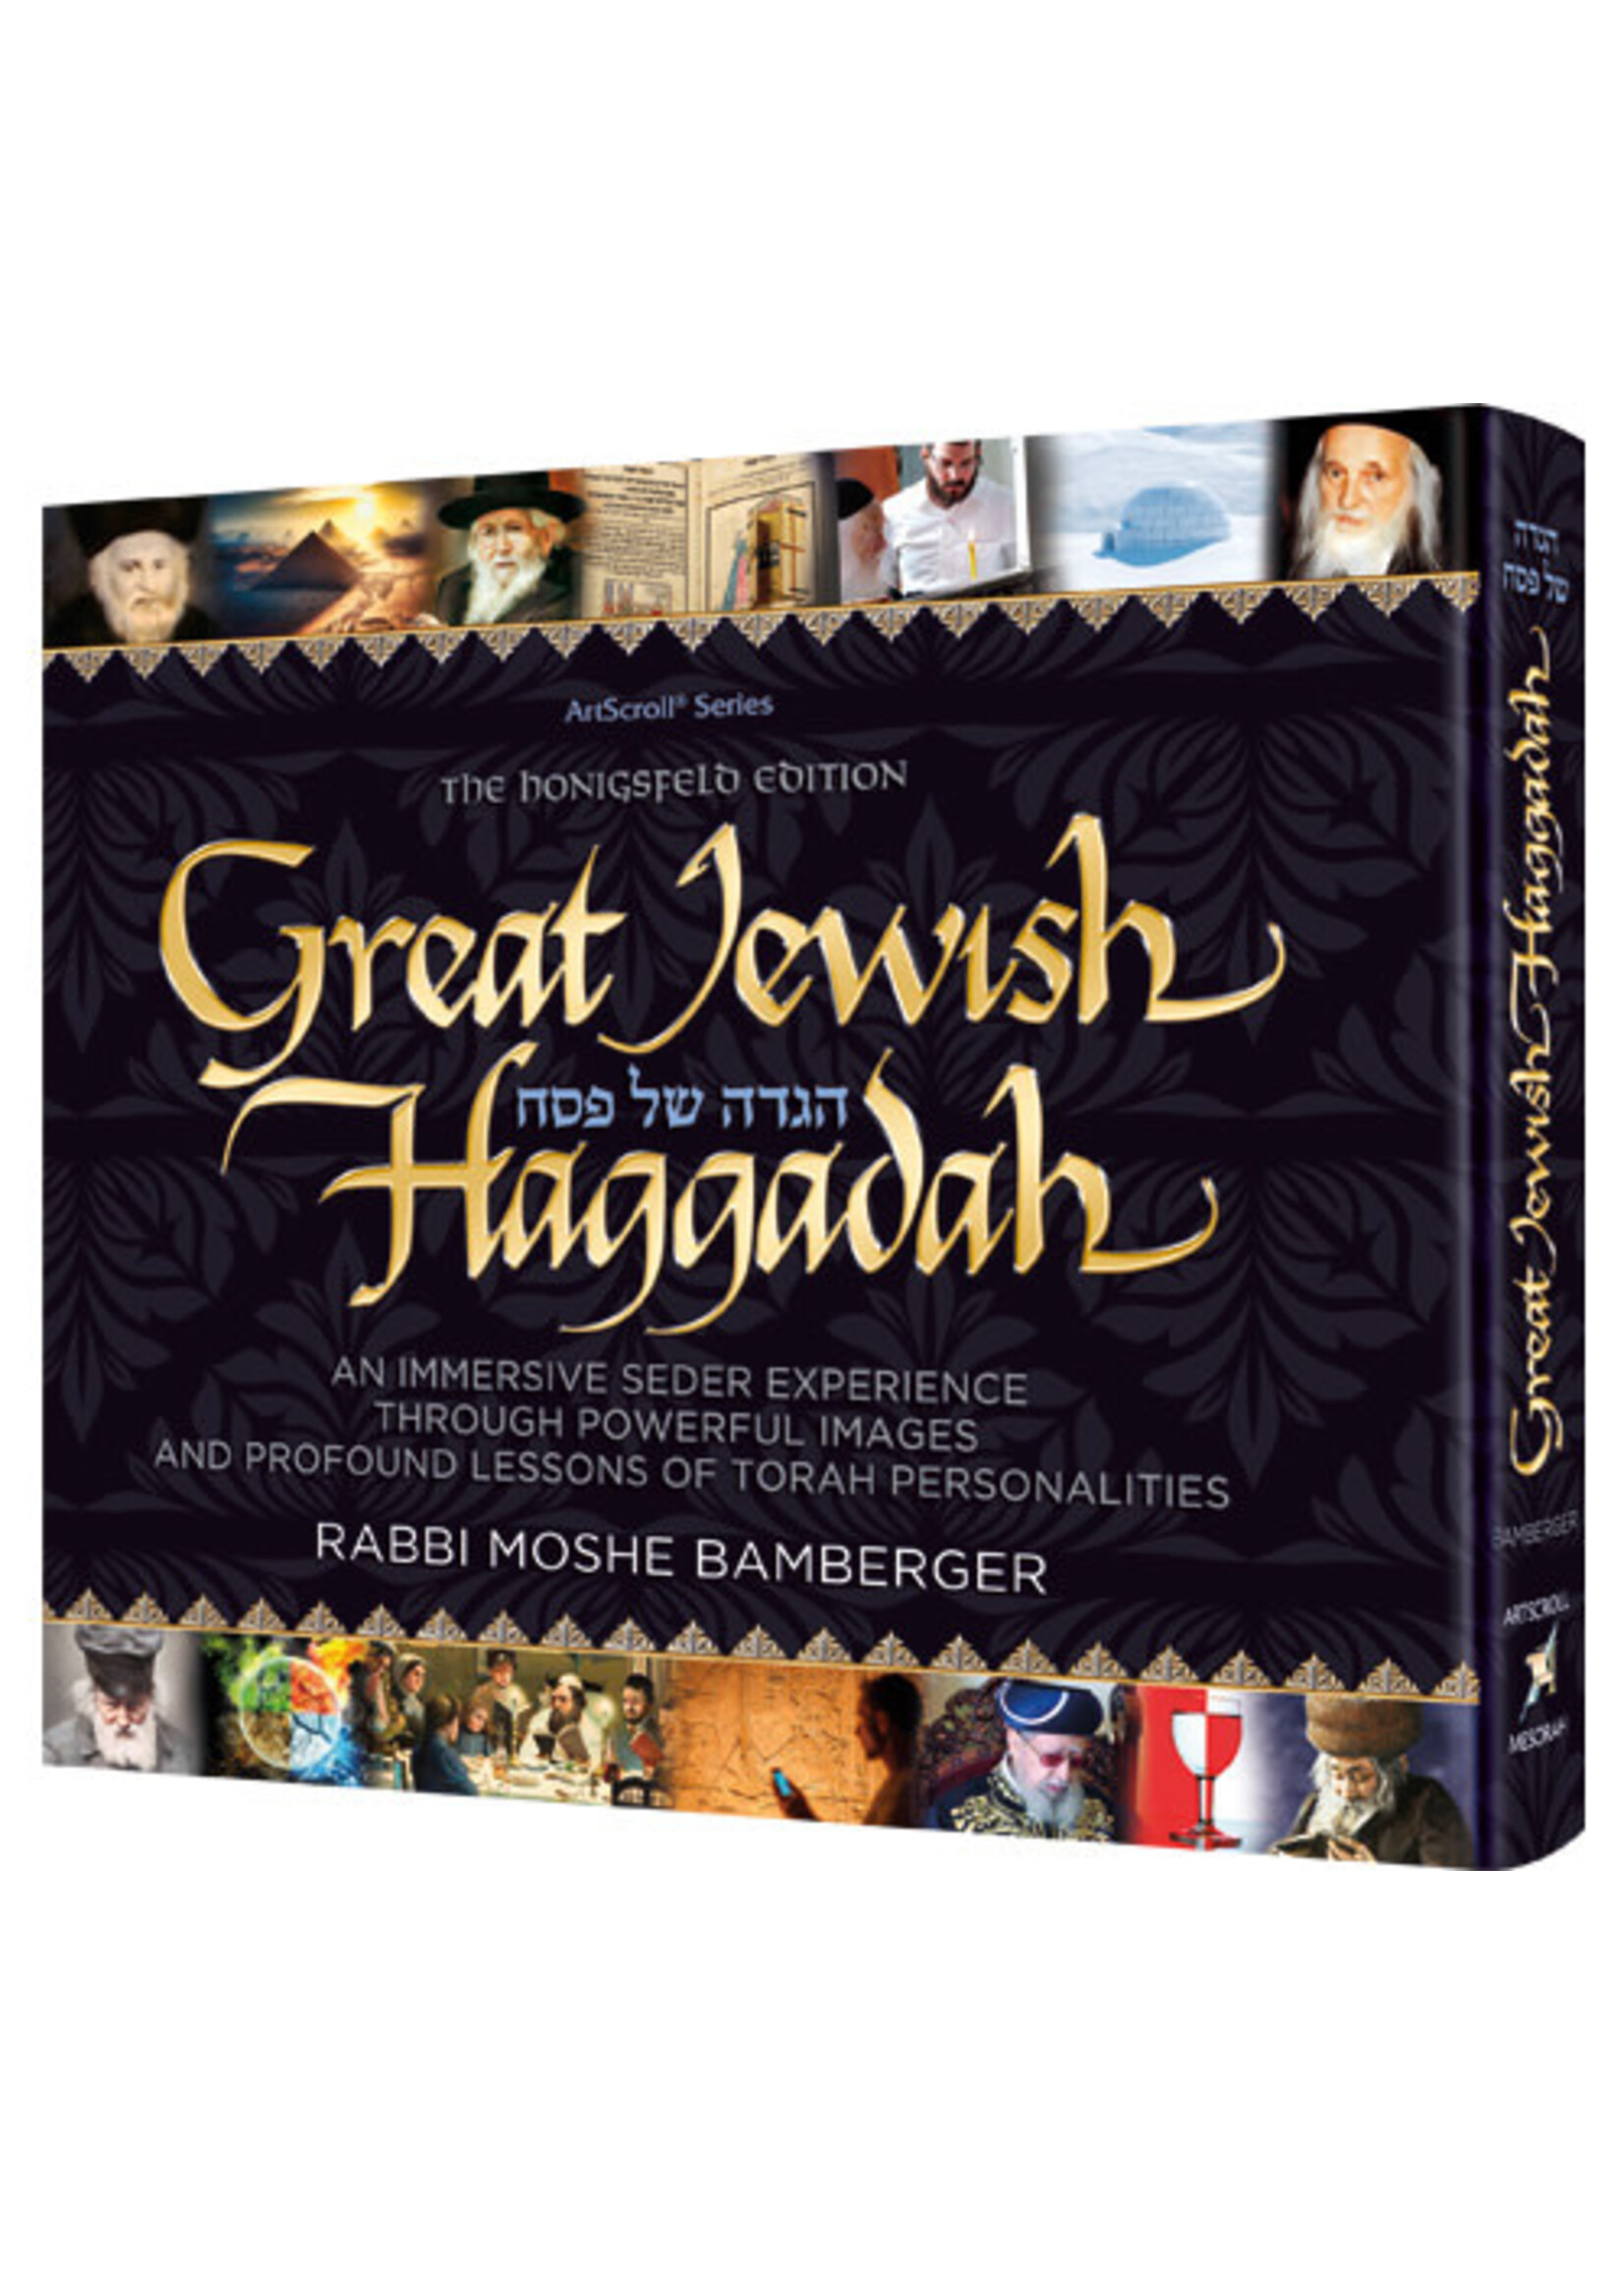 GREAT JEWISH HAGGADAH